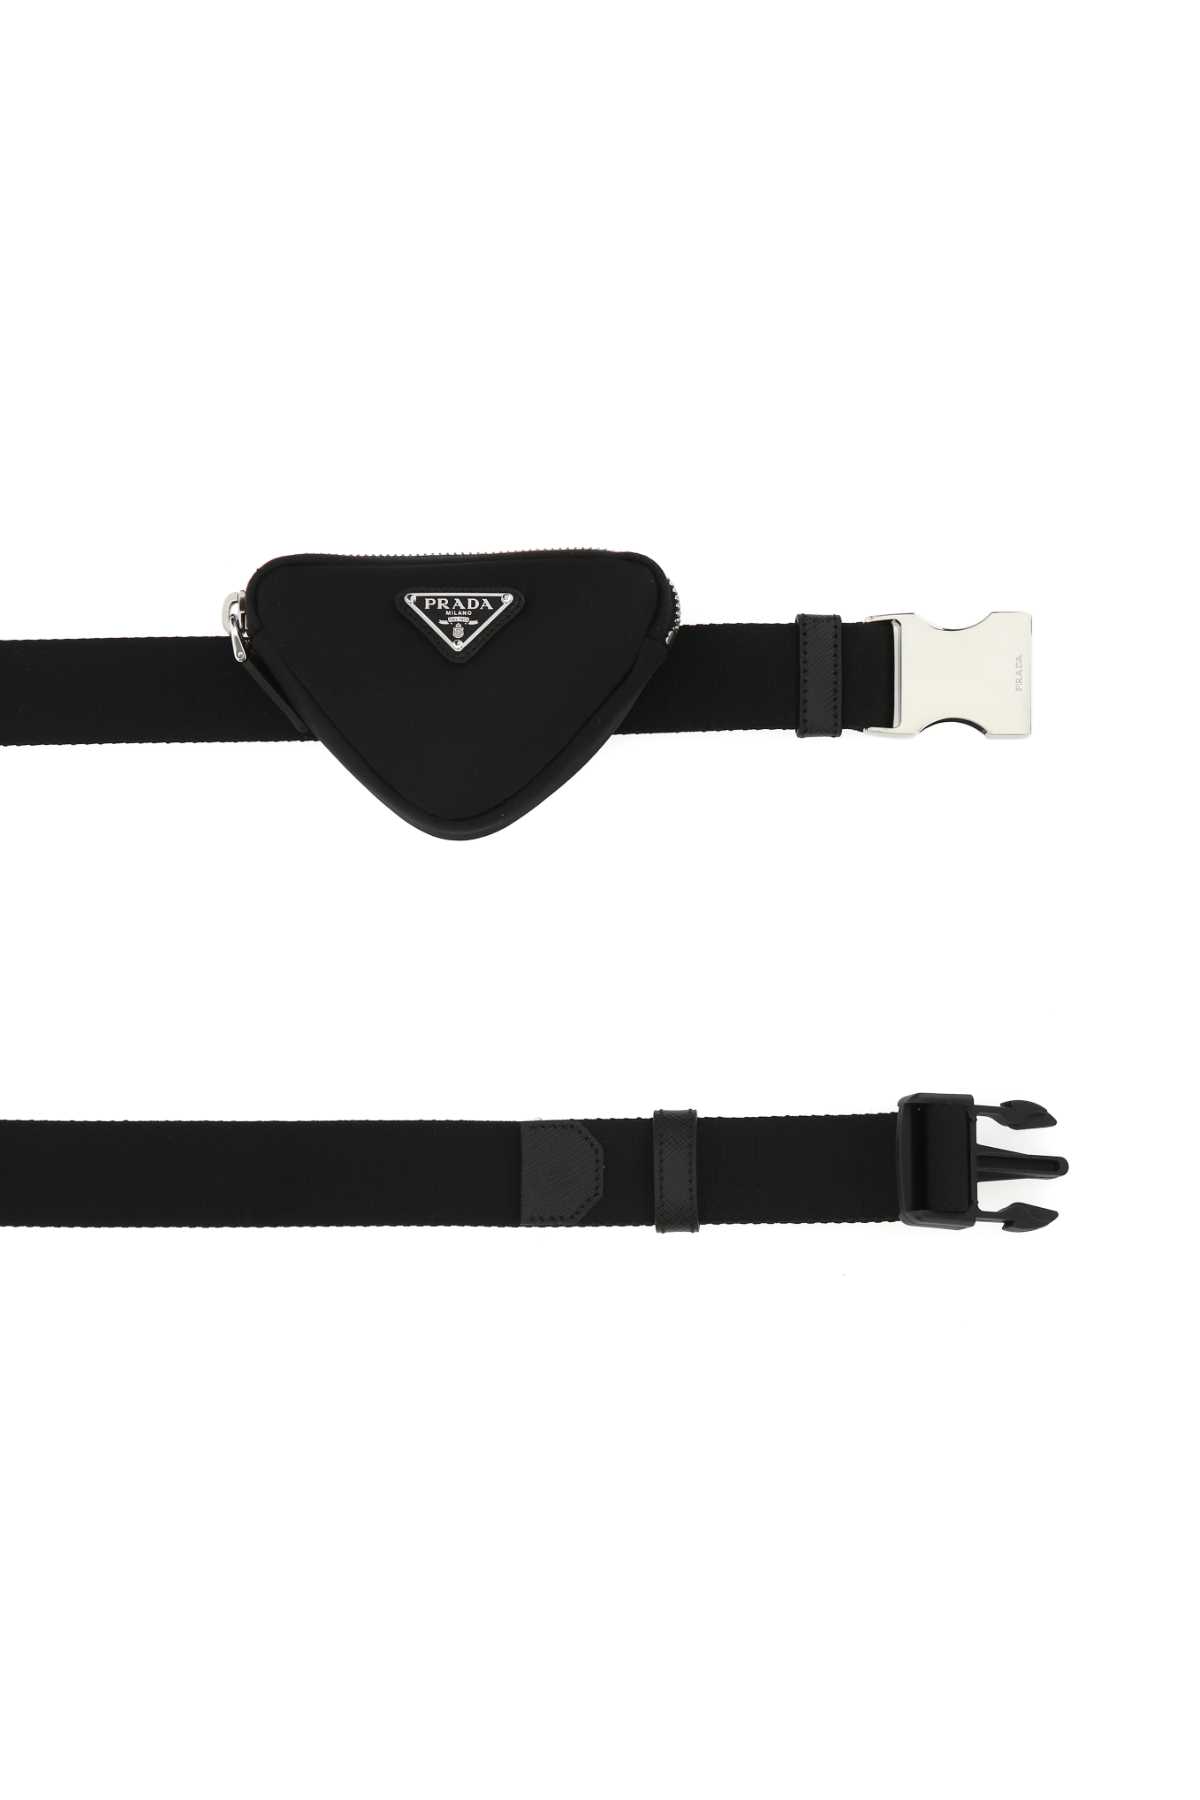 Shop Prada Black Nylon Belt In F0002